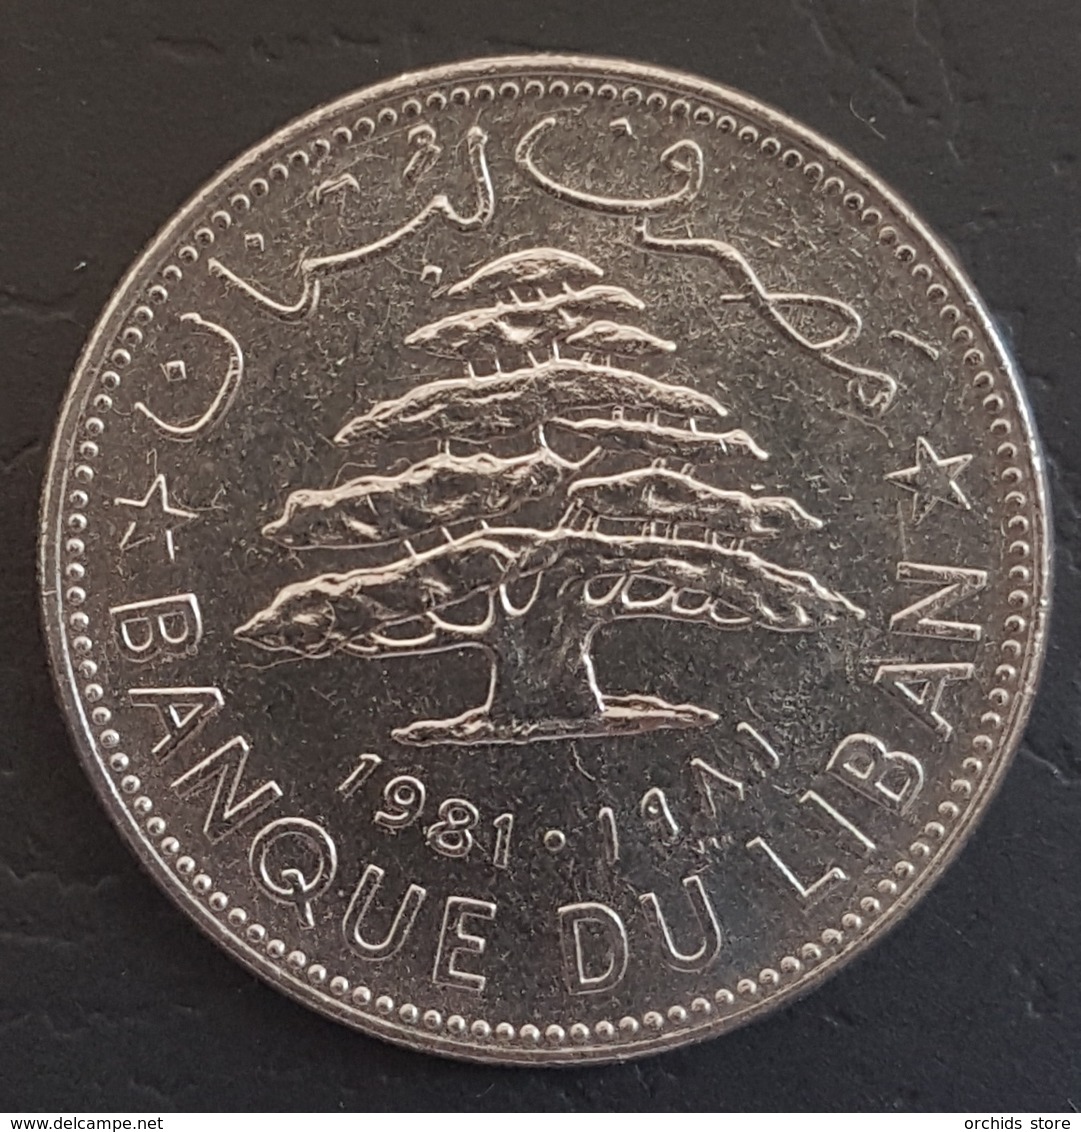 HX - Lebanon 1981 1 Livre Coin - Liban